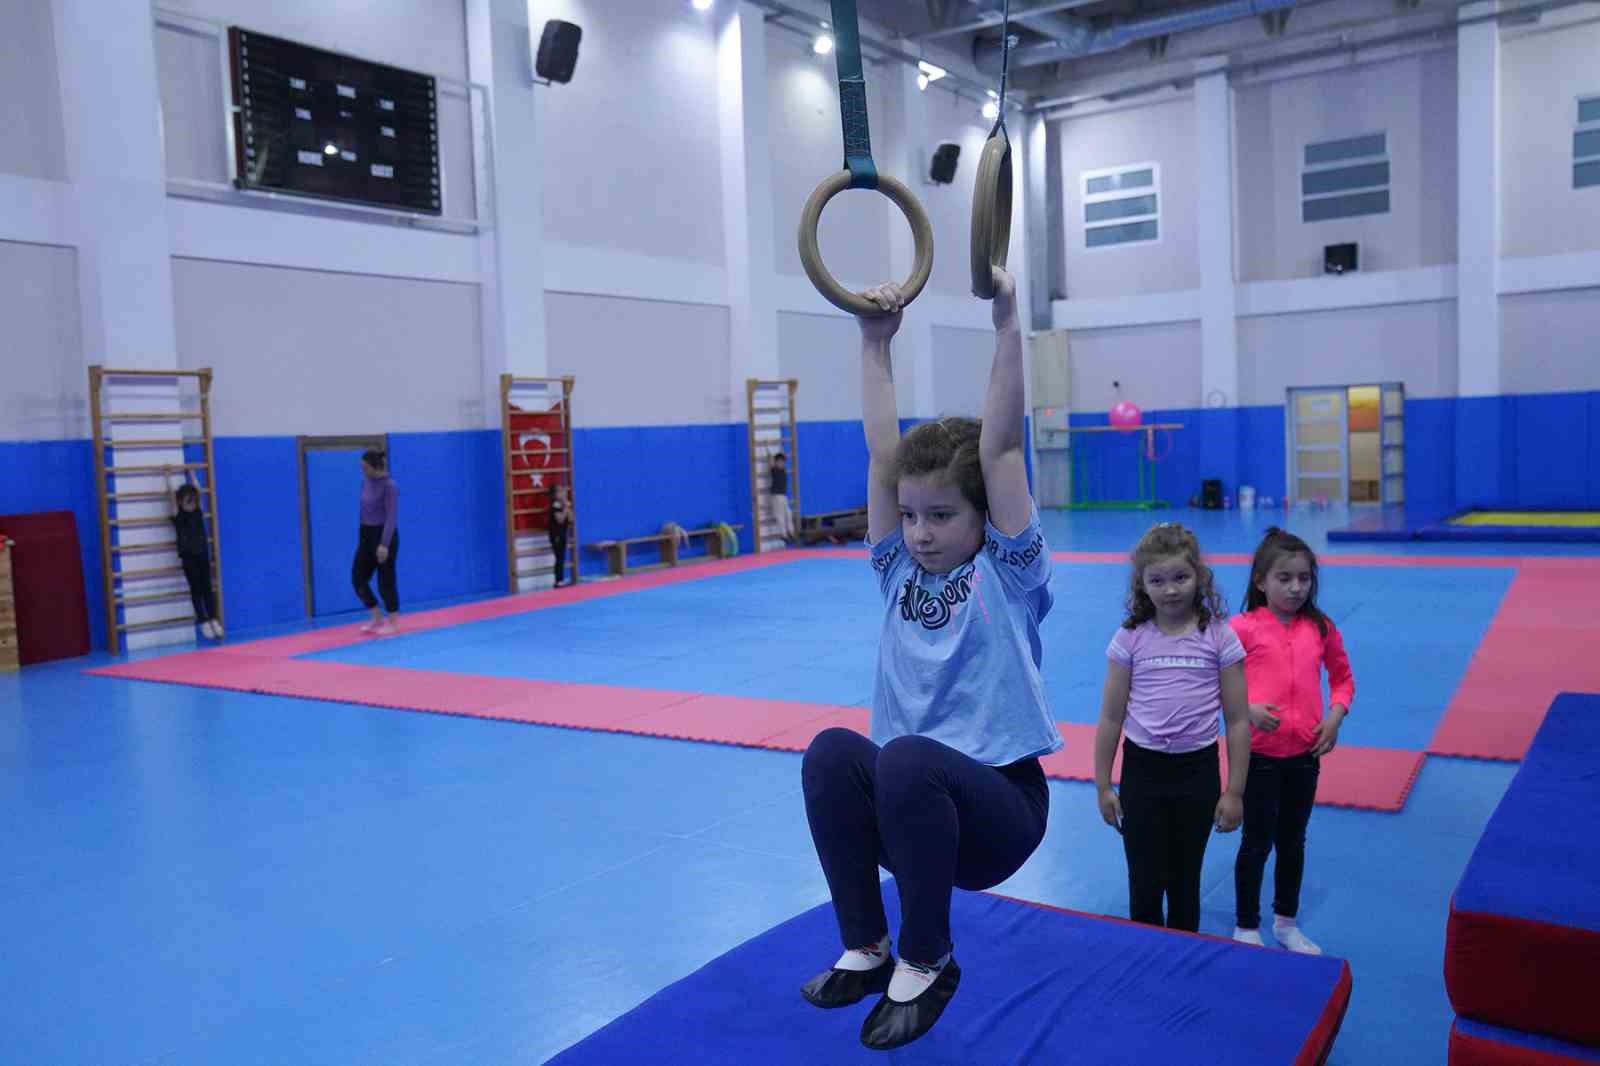 Jimnastik kursları çocuklardan yoğun ilgi görüyor